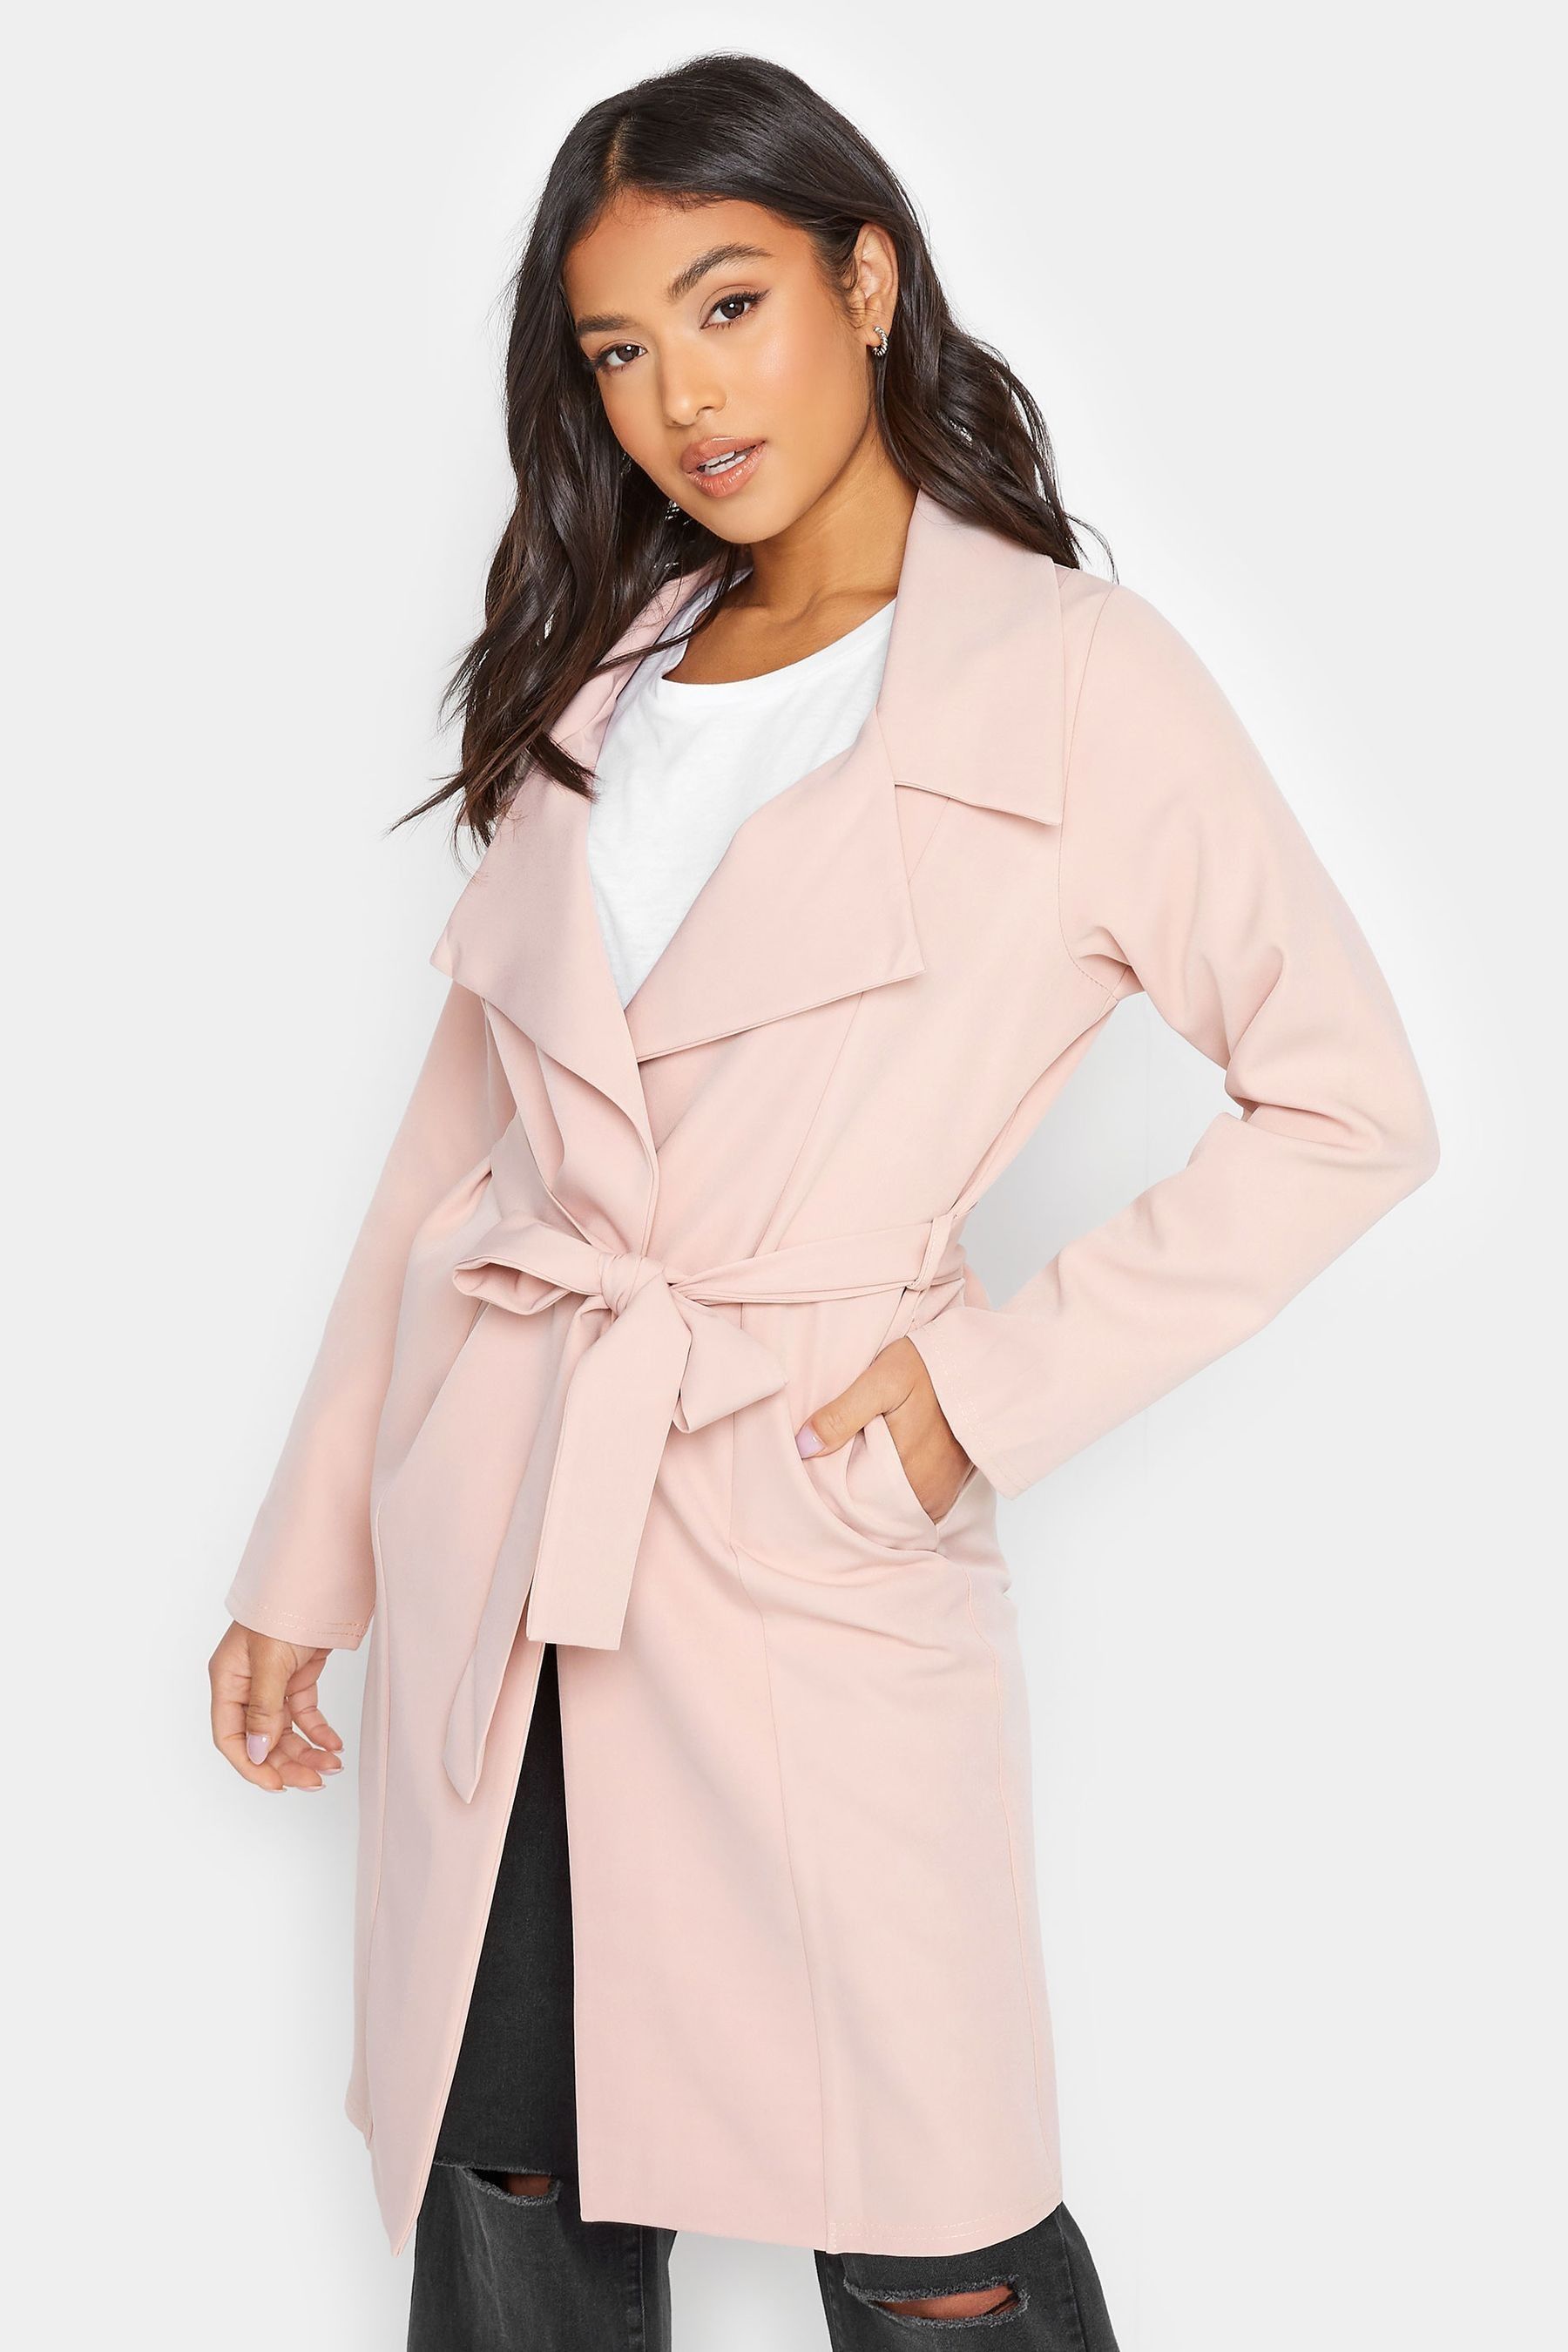 Buy PixieGirl Petite Pink Duster Coat from the Next UK online shop